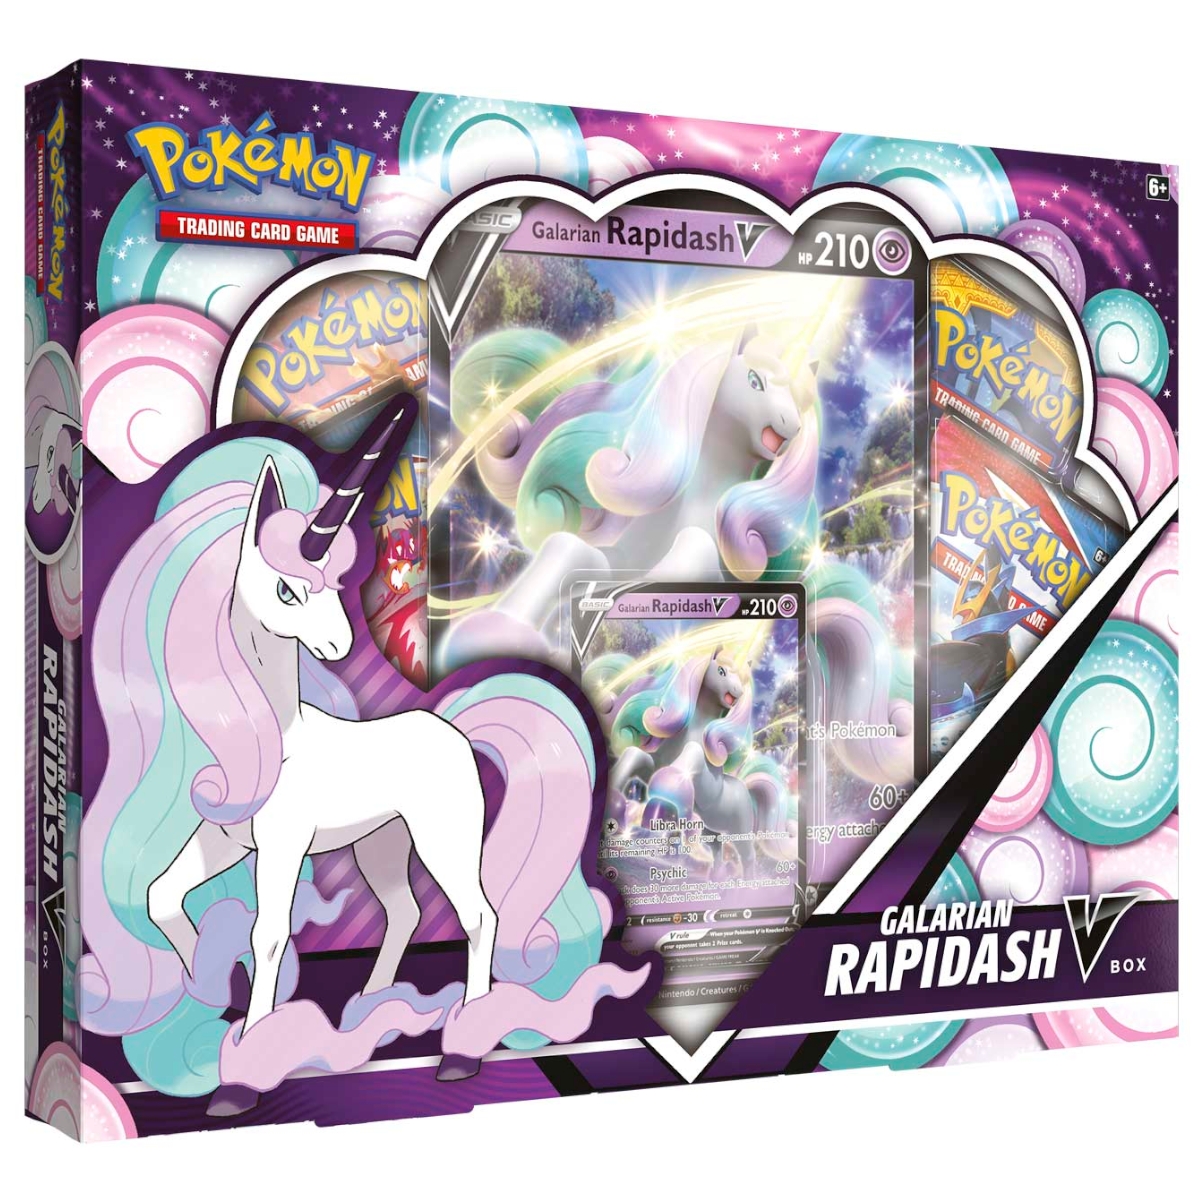 Pokémon - Galarian Rapidash V Box